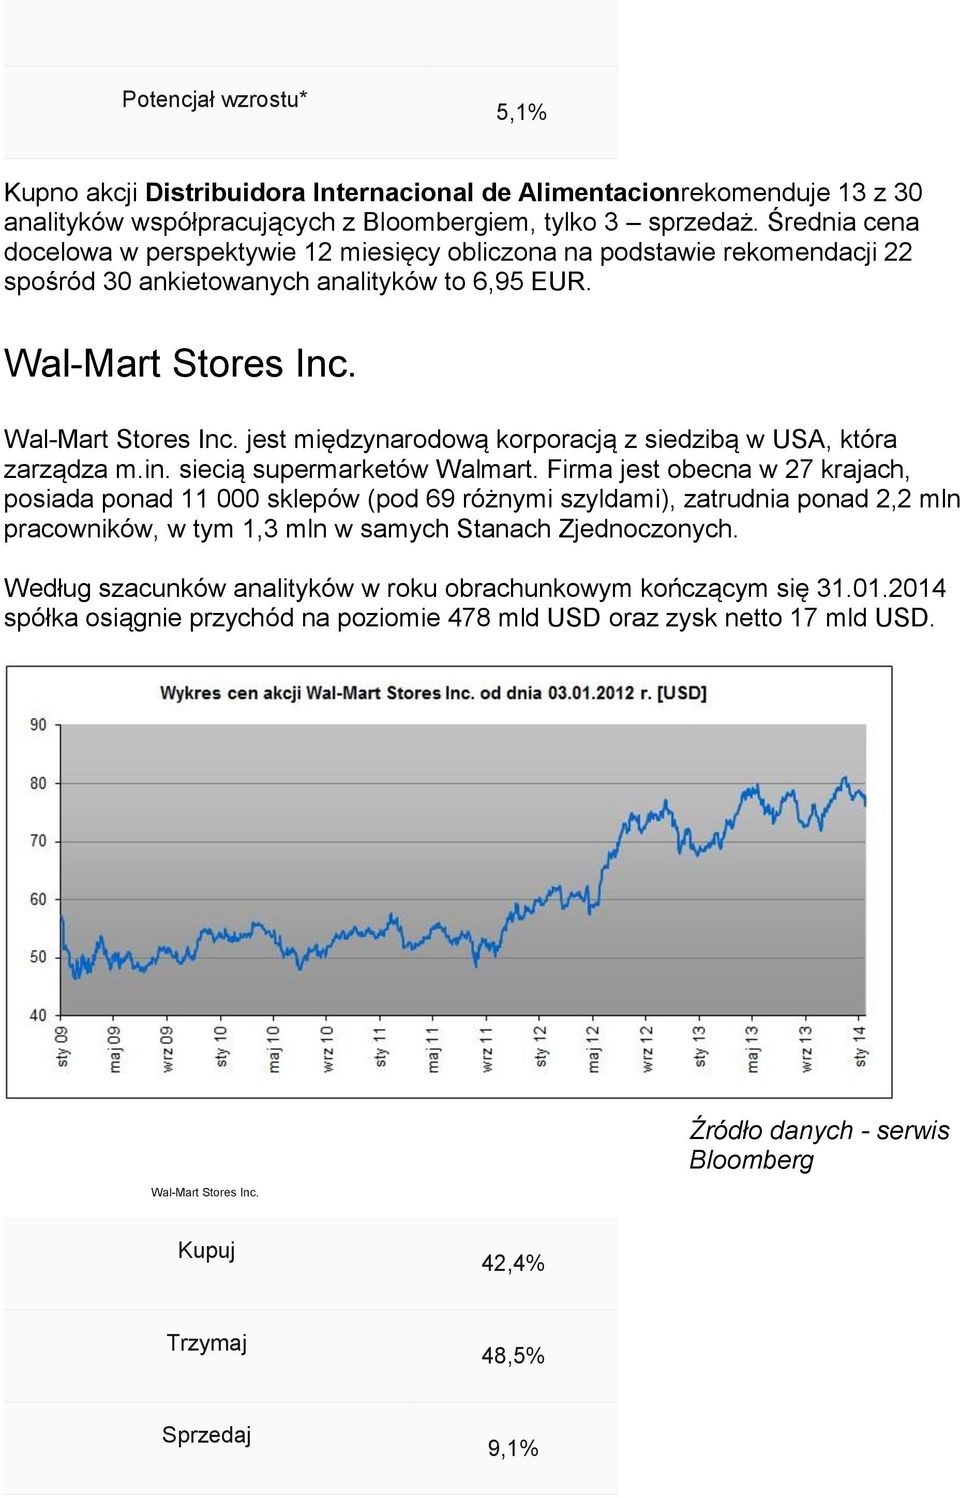 Wal-Mart Stores Inc. jest międzynarodową korporacją z siedzibą w USA, która zarządza m.in. siecią supermarketów Walmart.